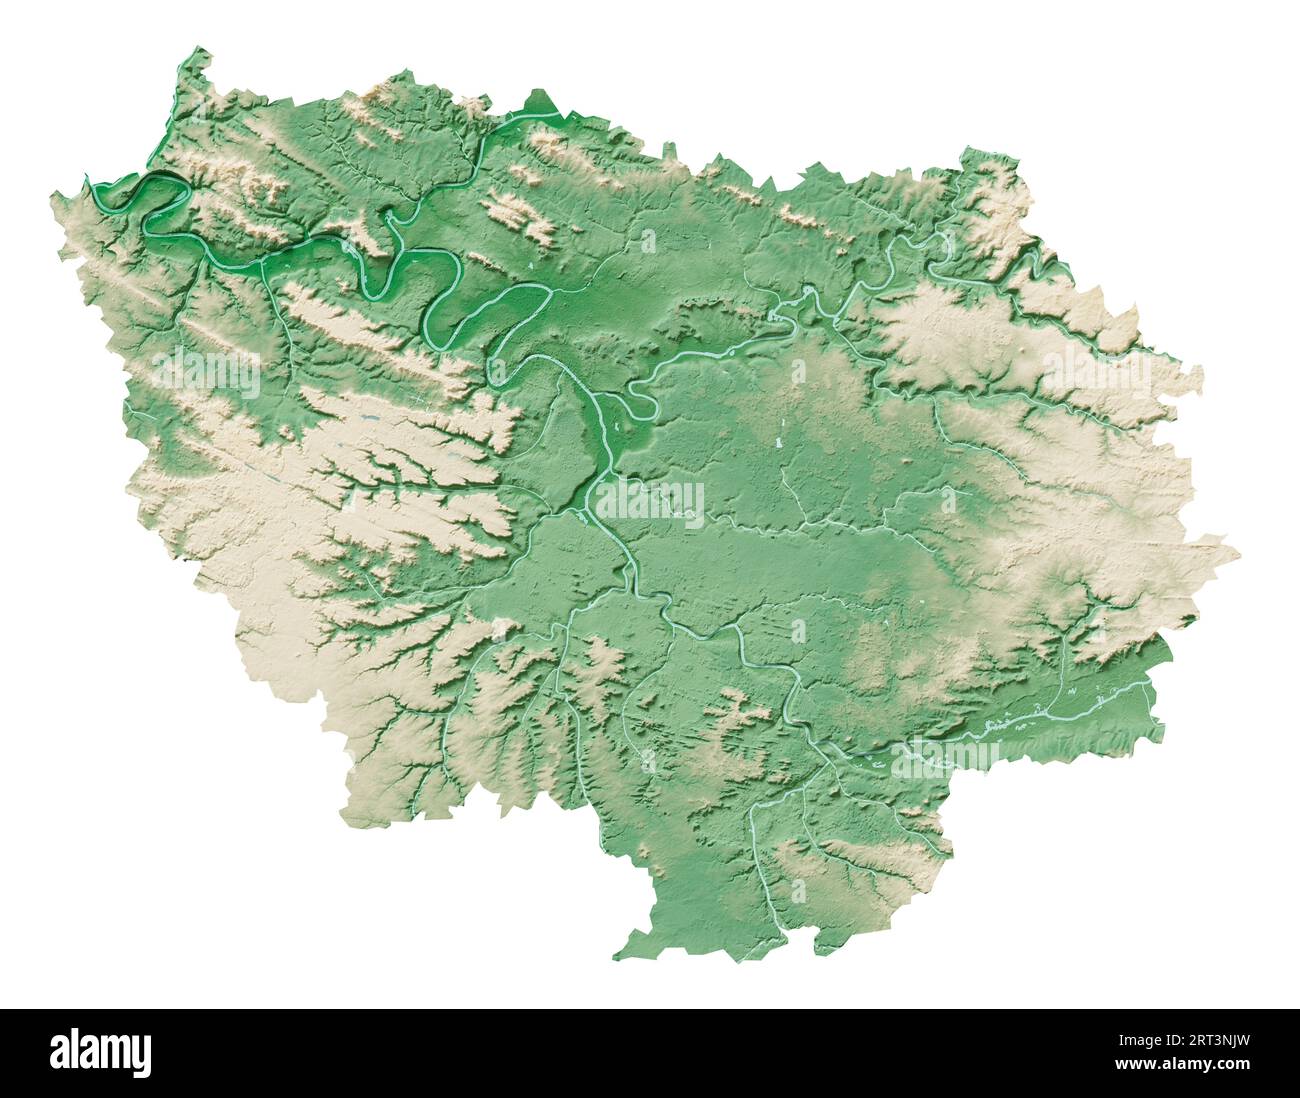 Île-de-France. Eine Region Frankreichs. Detailliertes 3D-Rendering einer schattierten Reliefkarte, Flüsse, Seen. Farbig nach Höhe. Reiner weißer Hintergrund. Stockfoto